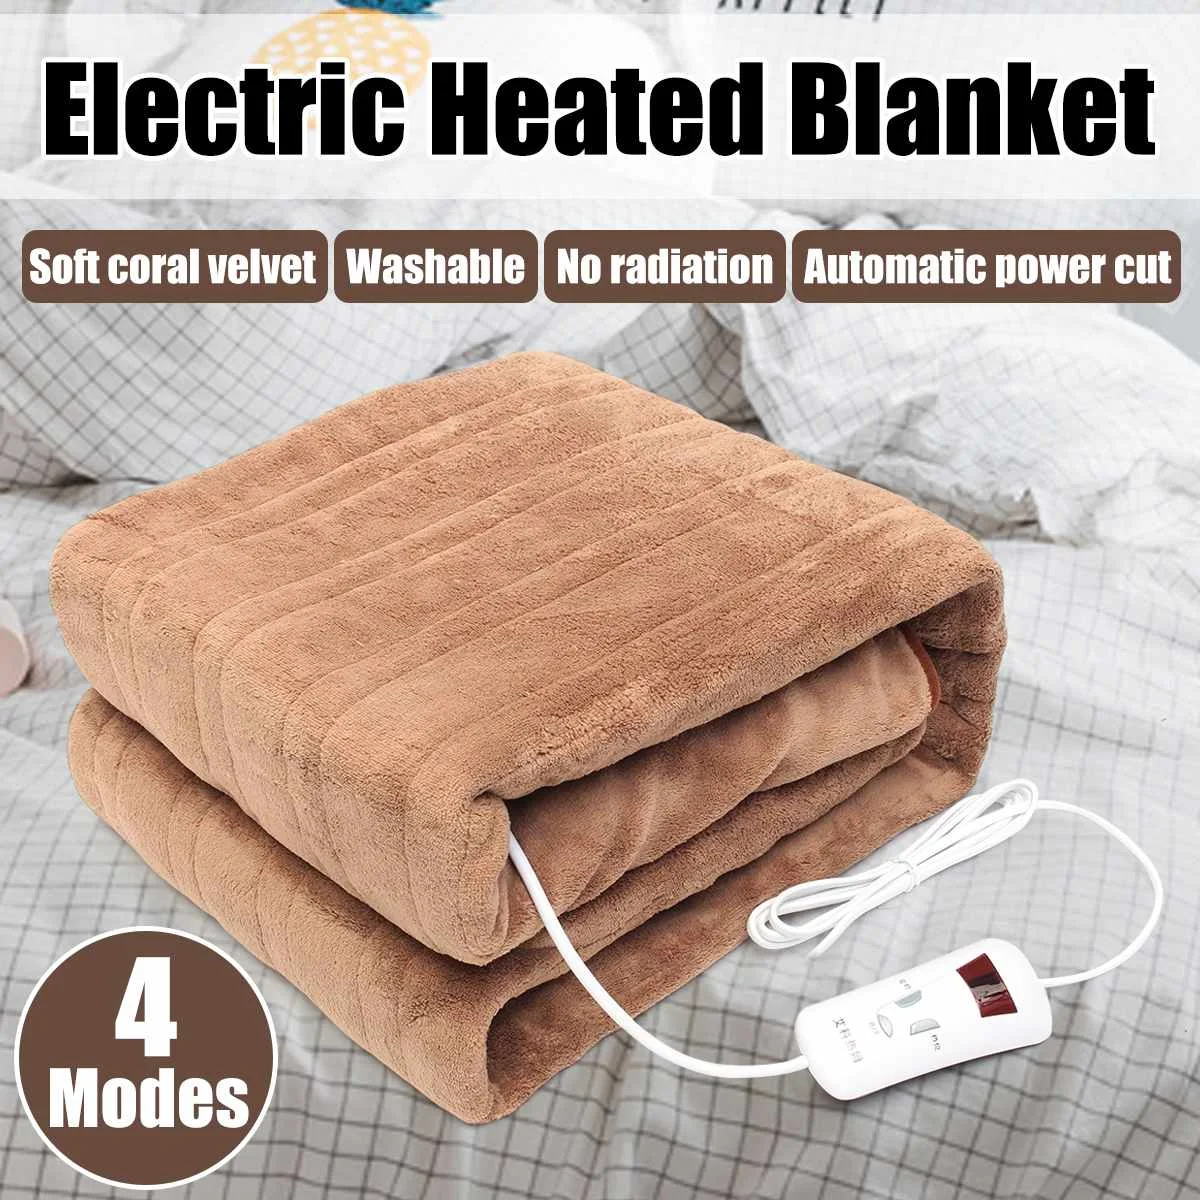 Водонепроницаемый машинный моющийся бытовой Электрический одеяло коралловый флис нагреватель с контролем температуры Автоматическое отключение питания